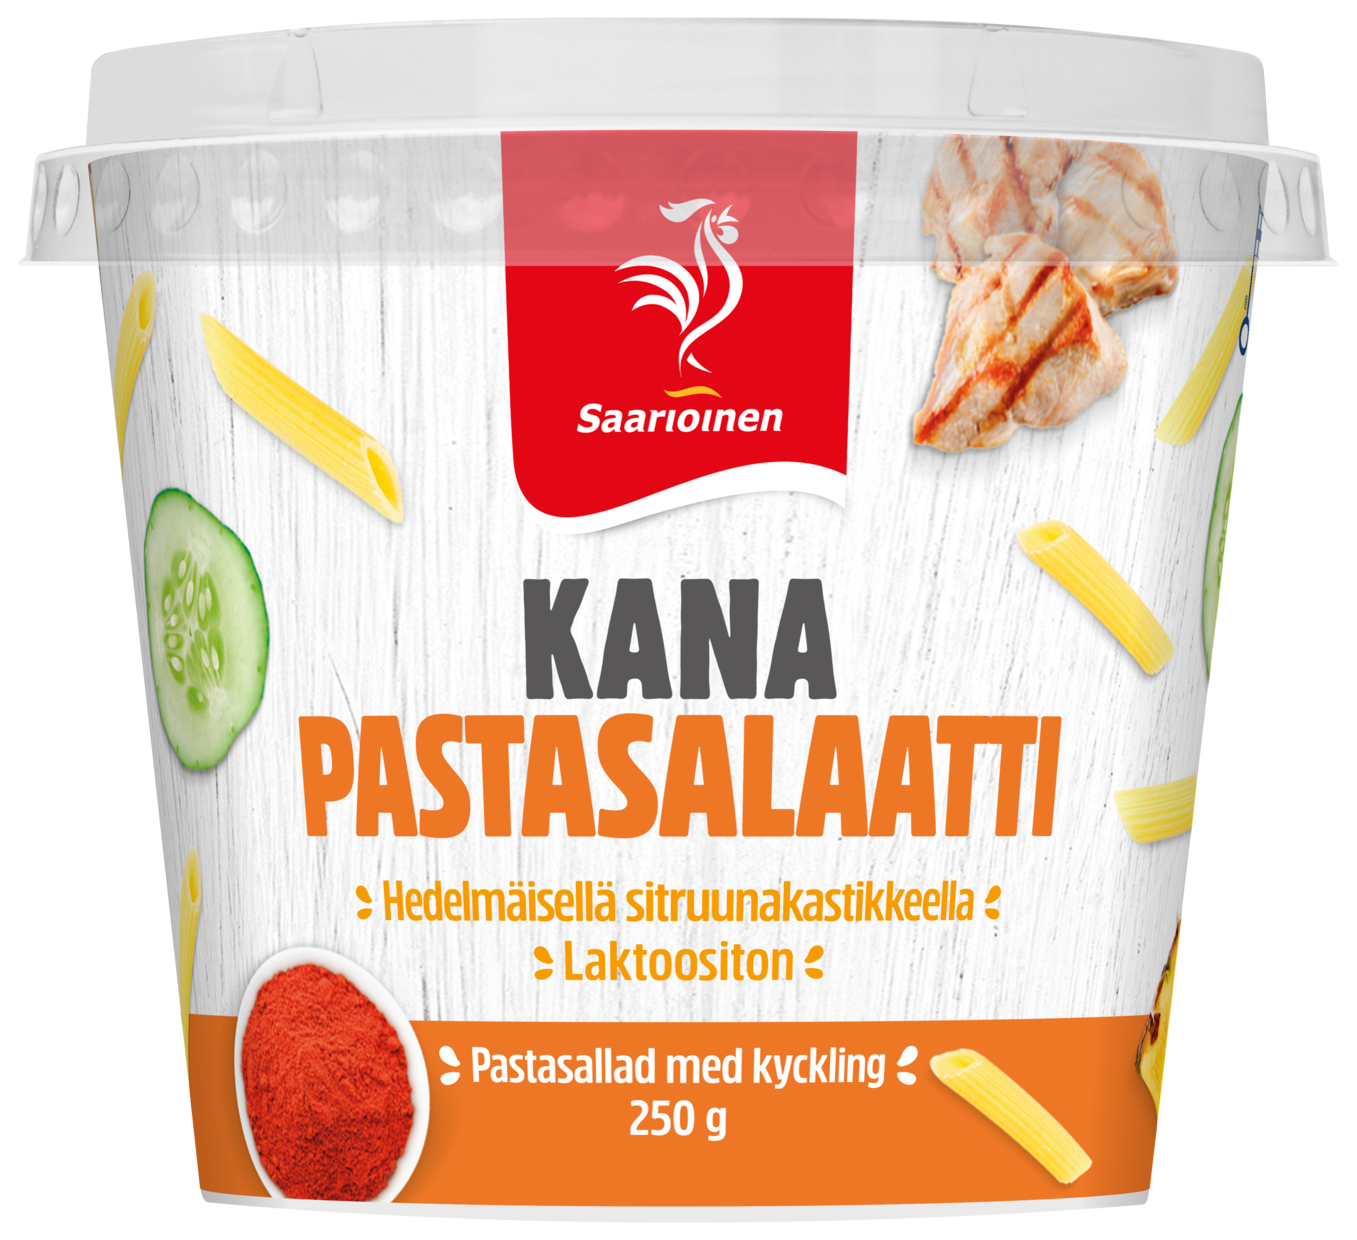 Eväs Kana-pastasalaatti 250 g - Saarioinen